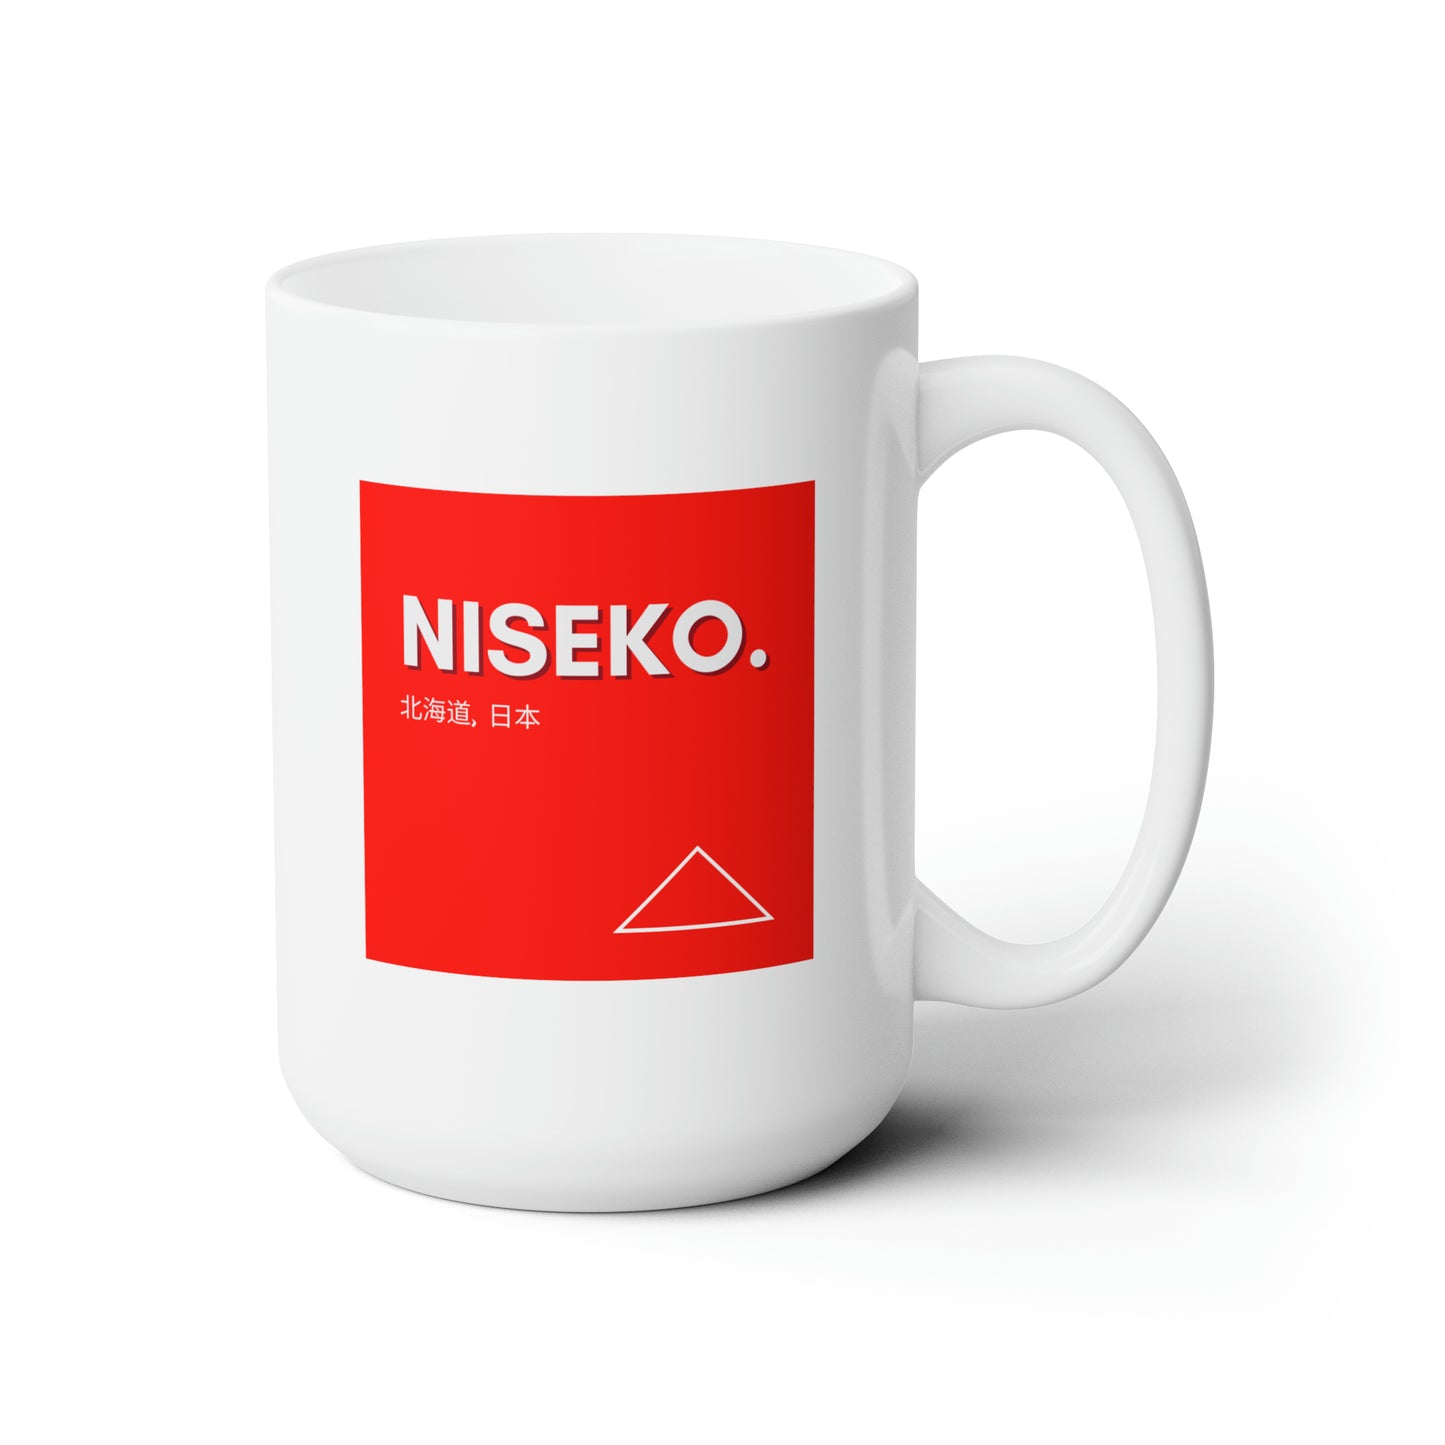 Niseko Ski Mug